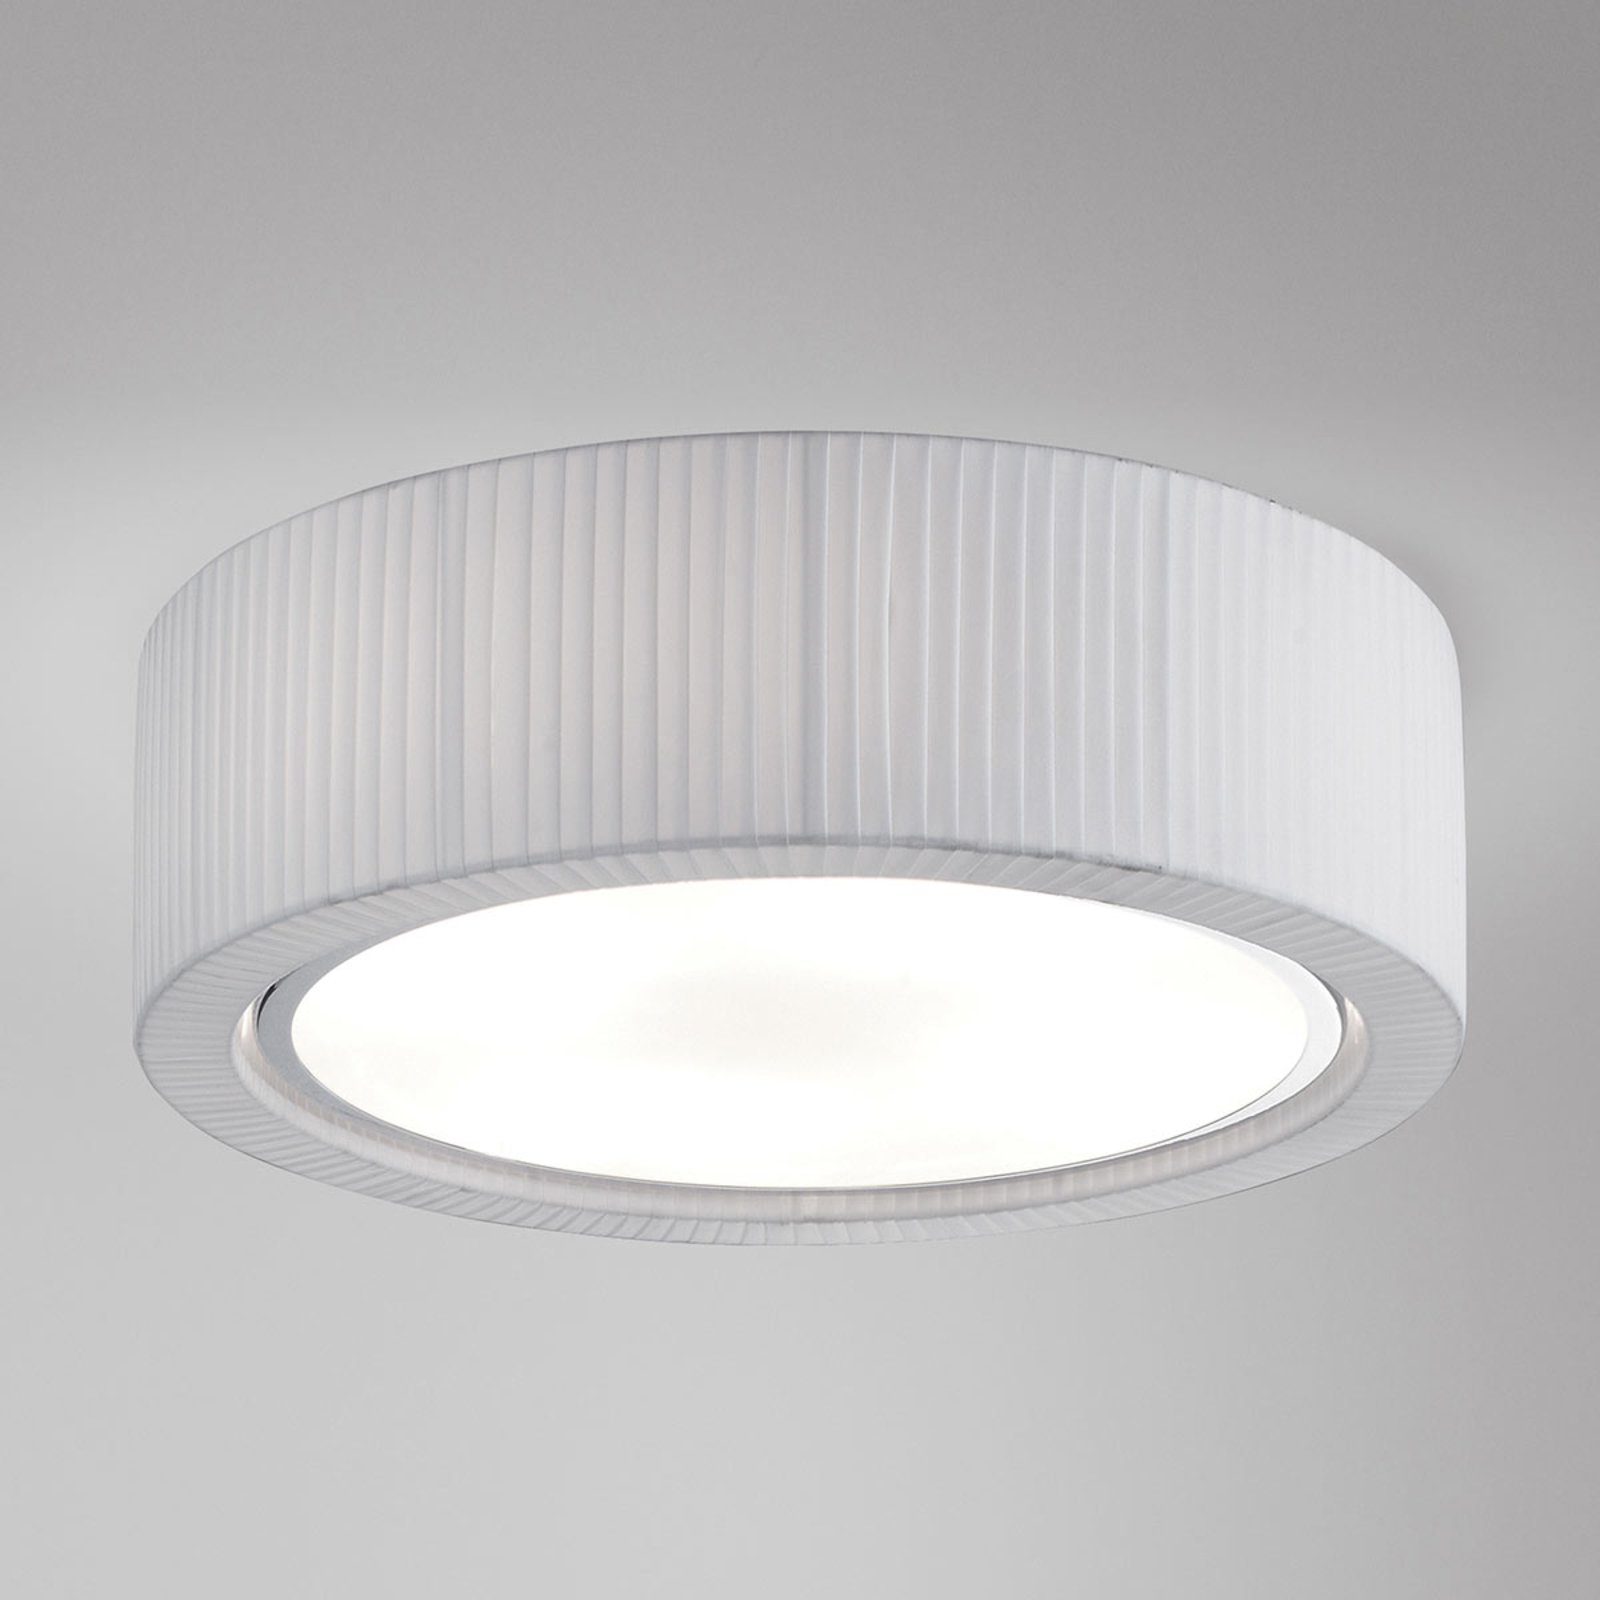 Bover Urban PF/37 loftlampe, hvid, 37 cm